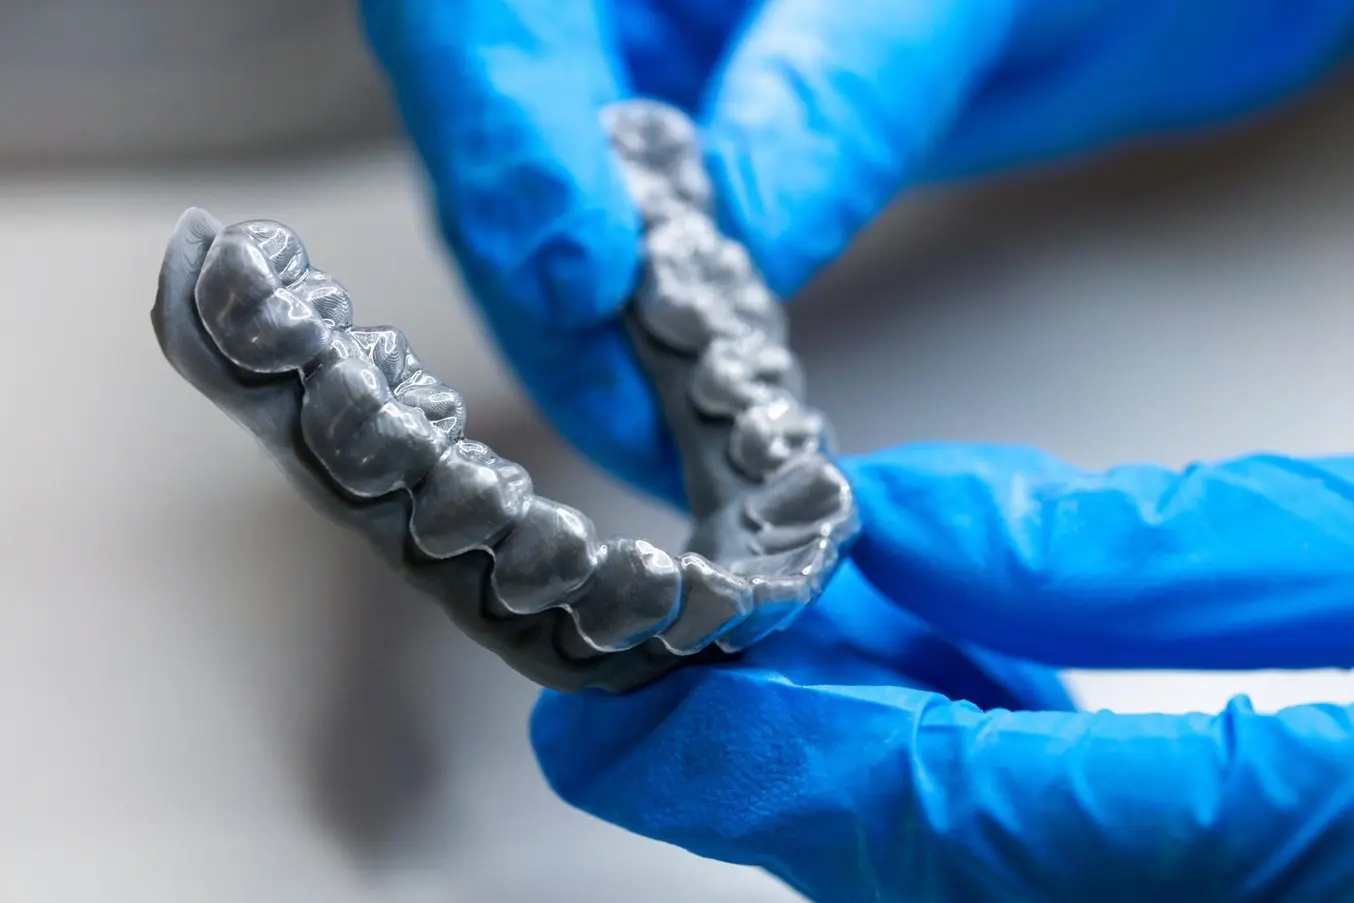 Прозрачный элайнер, термоформованный по 3D-модели, напечатанной на стоматологическом 3D-принтере Formlabs Form 3B.